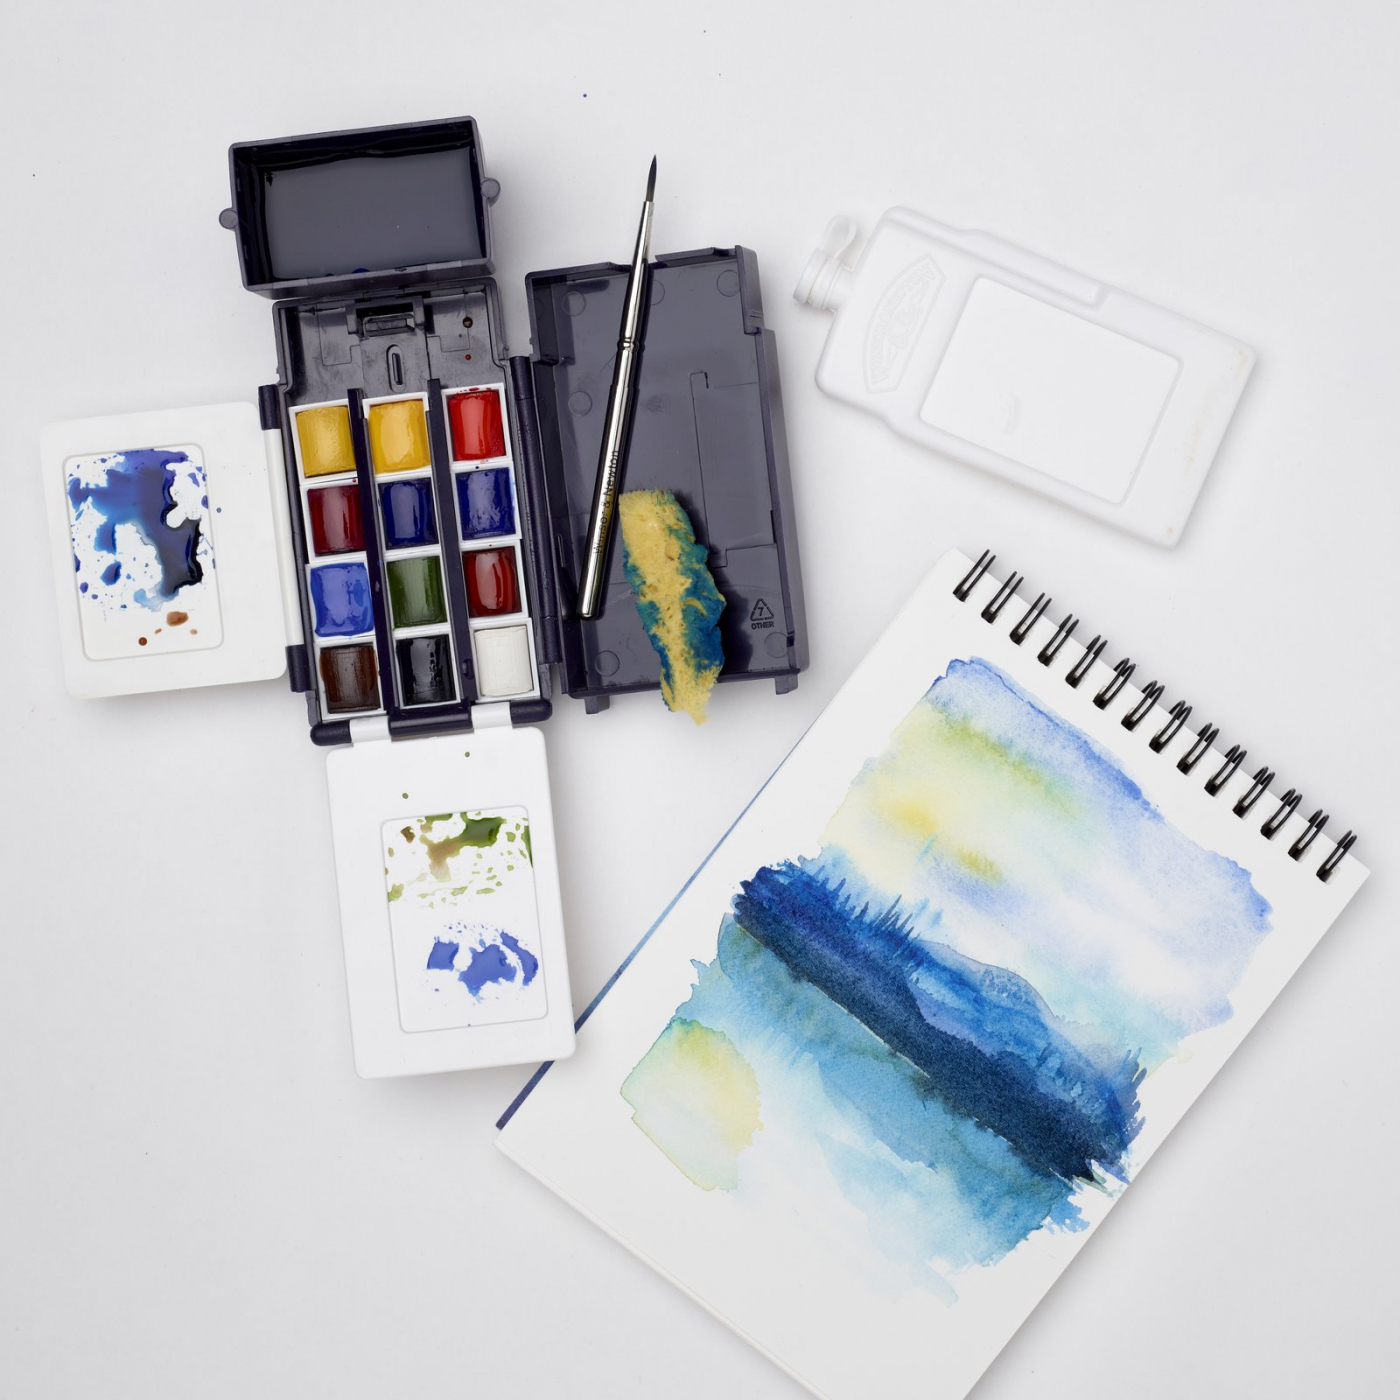 Cotman Akvarellset Field Pocket i gruppen Konstnärsmaterial / Färger / Akvarellfärg hos Pen Store (125830)